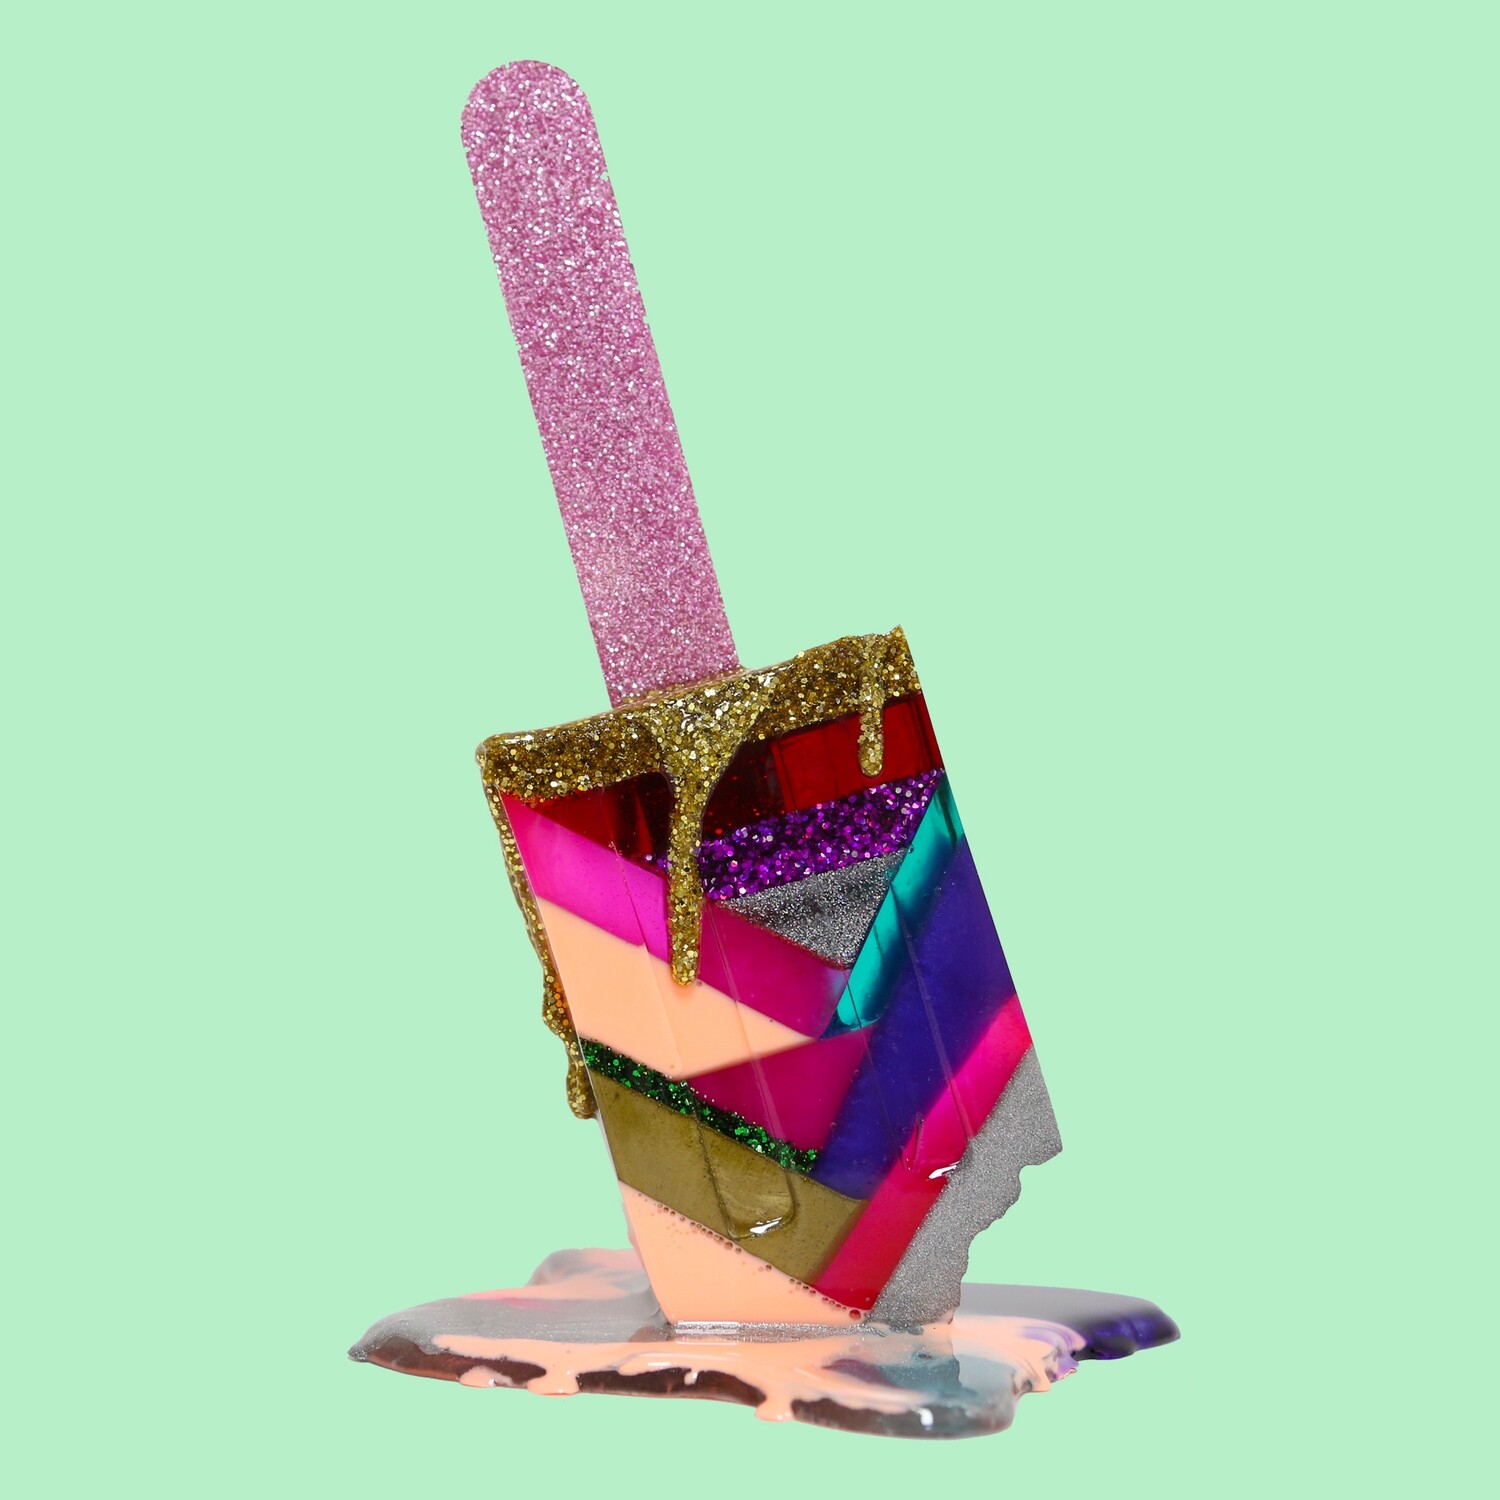 Melting Popsicle Art - Bigger Fresh - Original Melting Pops